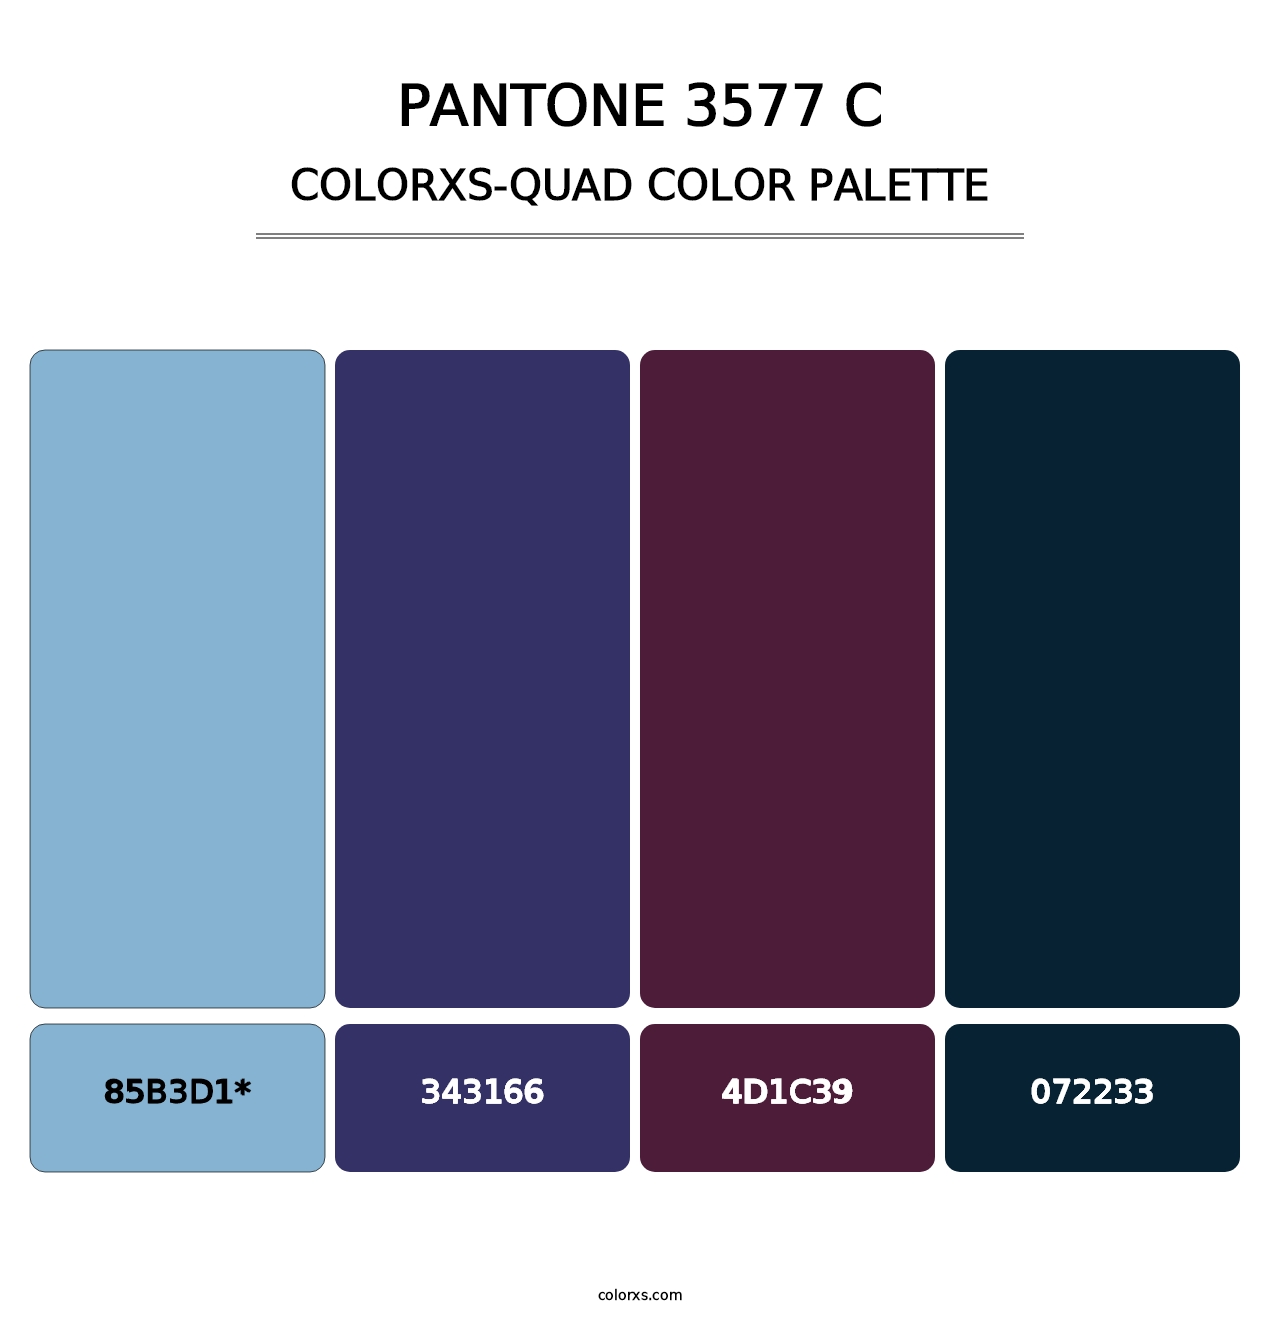 PANTONE 3577 C - Colorxs Quad Palette